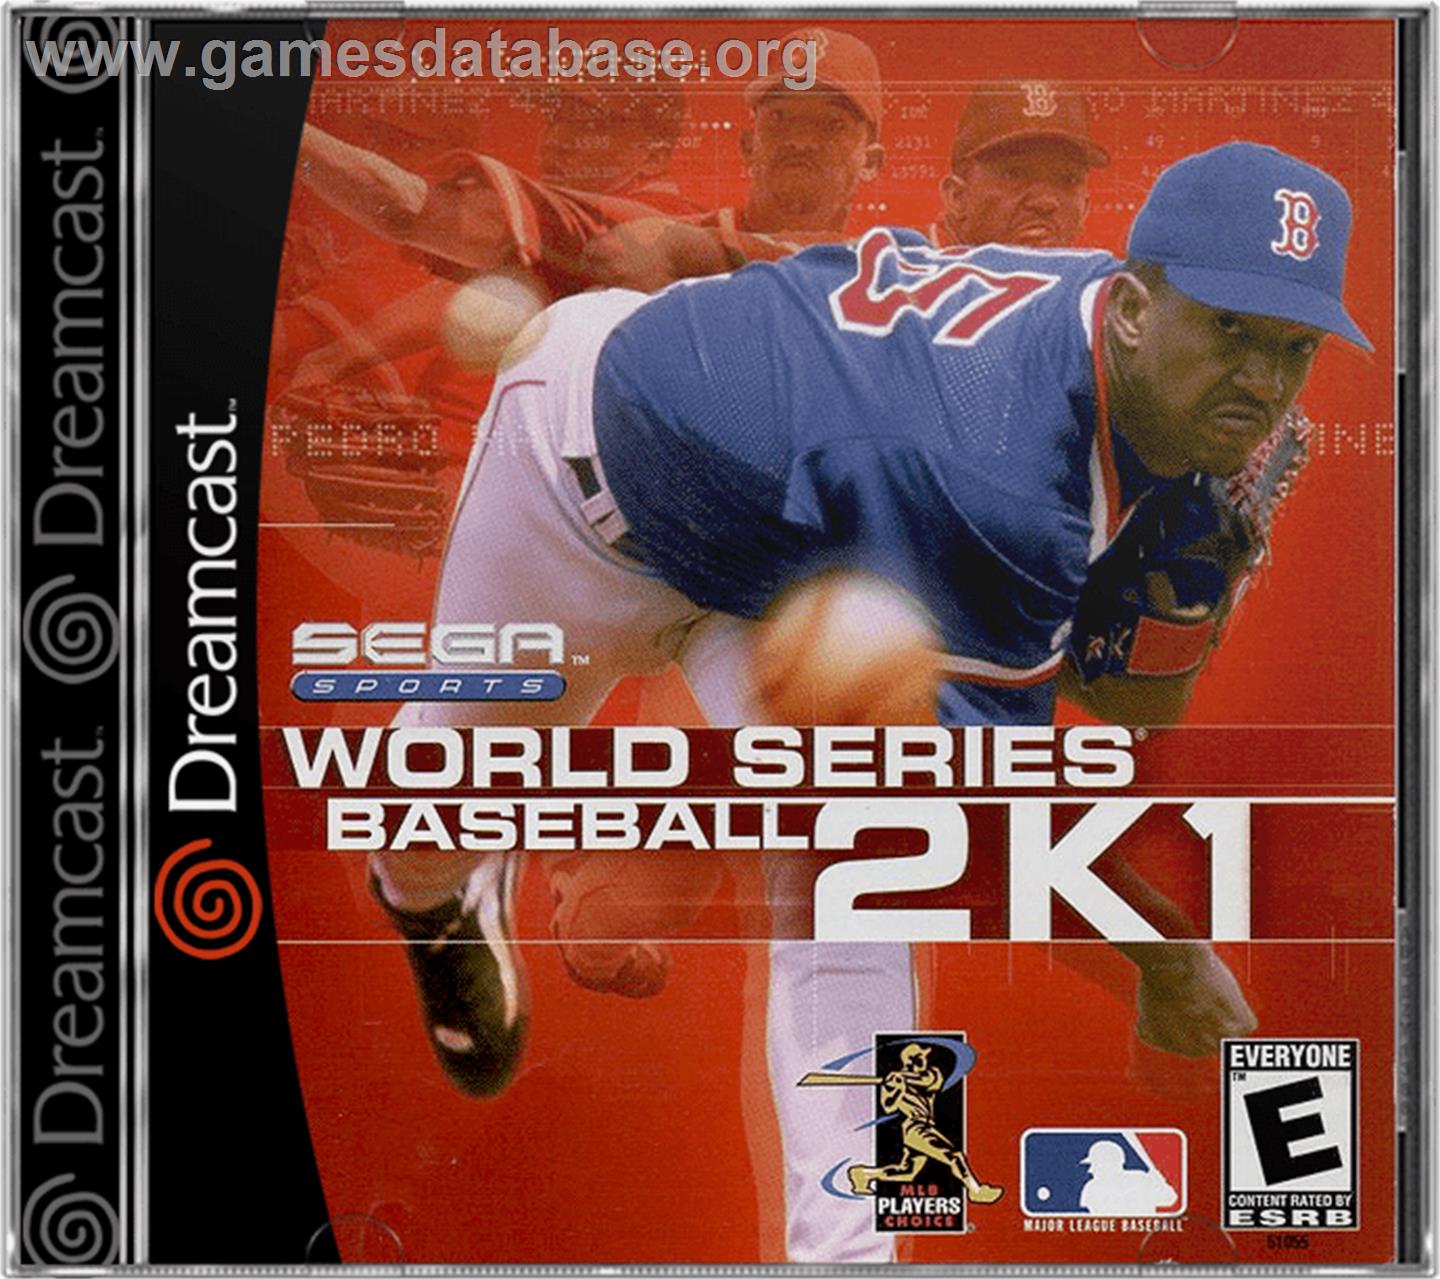 World Series Baseball 2K1 - Sega Dreamcast - Artwork - Box